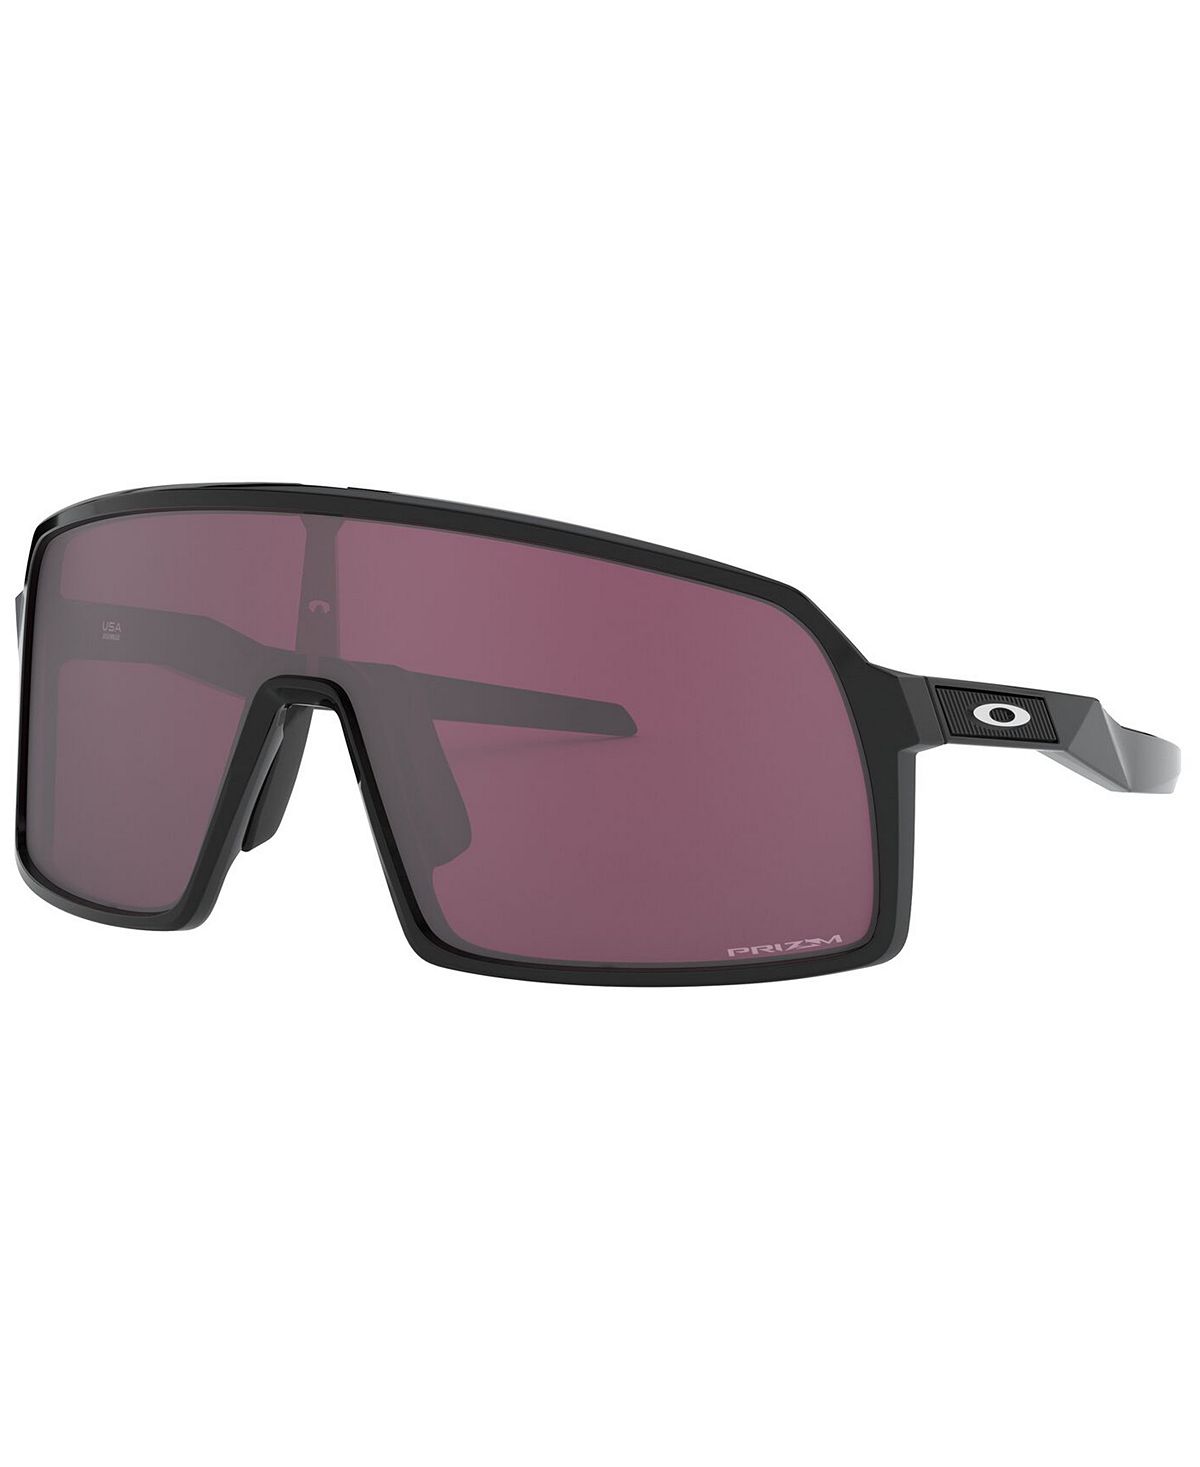 Мужские солнцезащитные очки sutro, oo9462 28 Oakley, мульти